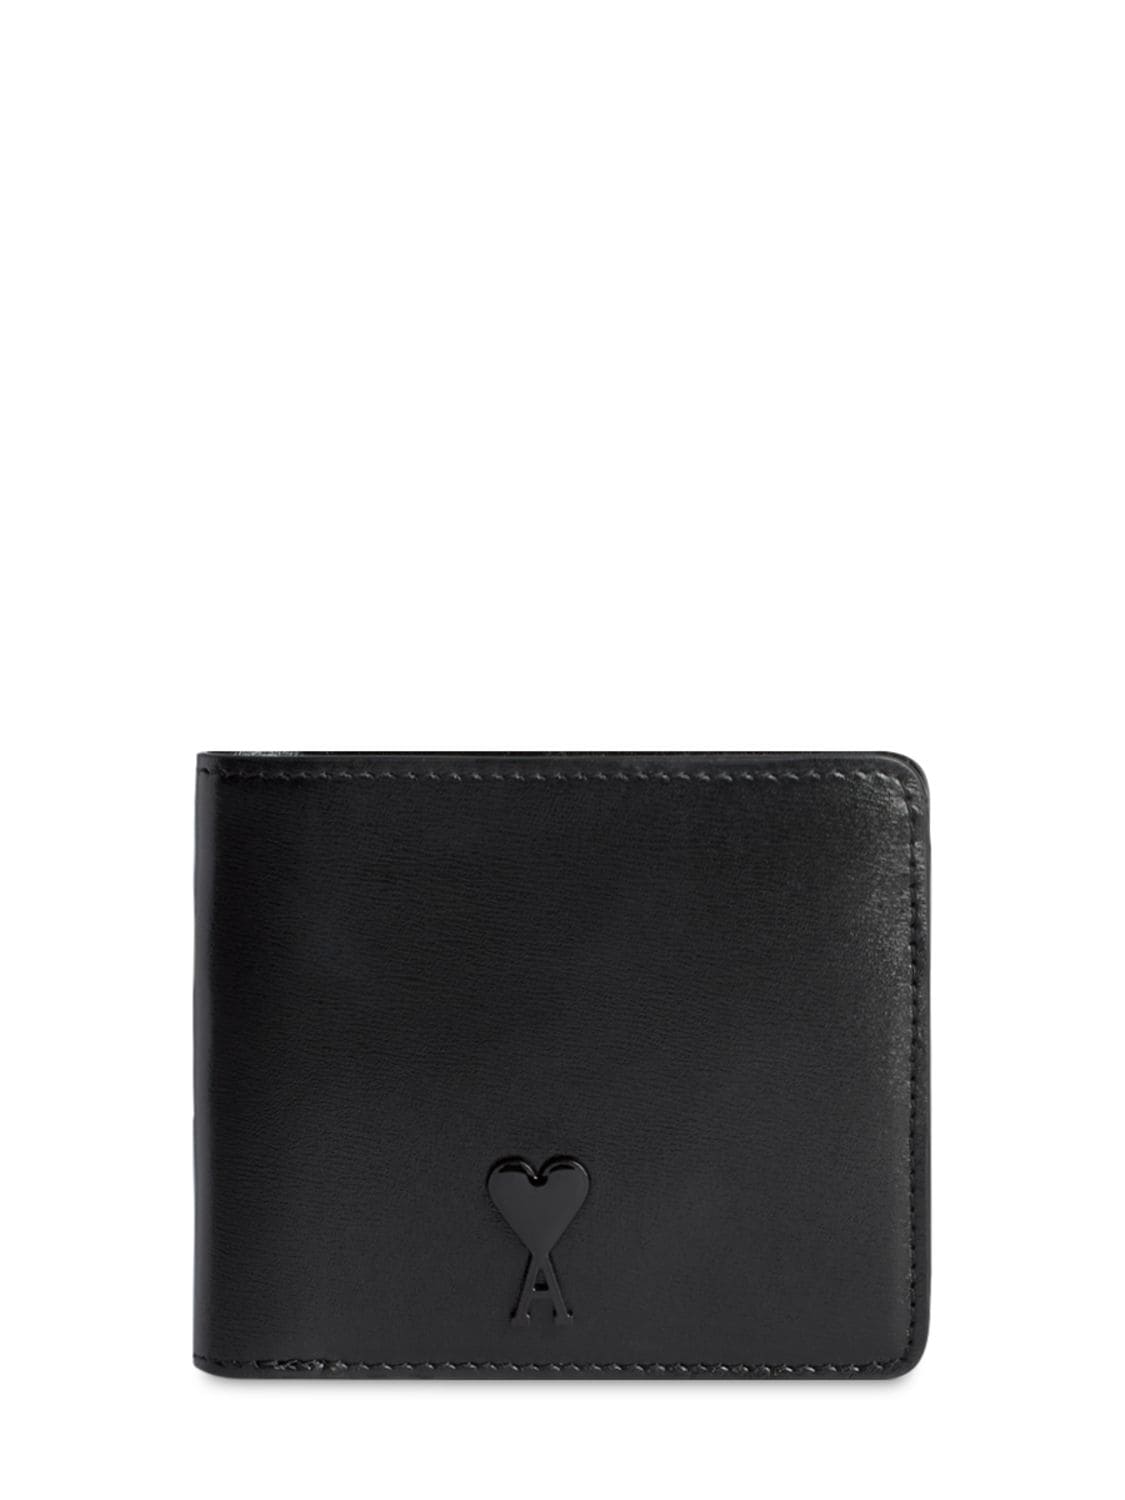 Ami Alexandre Mattiussi Palmellato Leather Billfold Wallet In Black